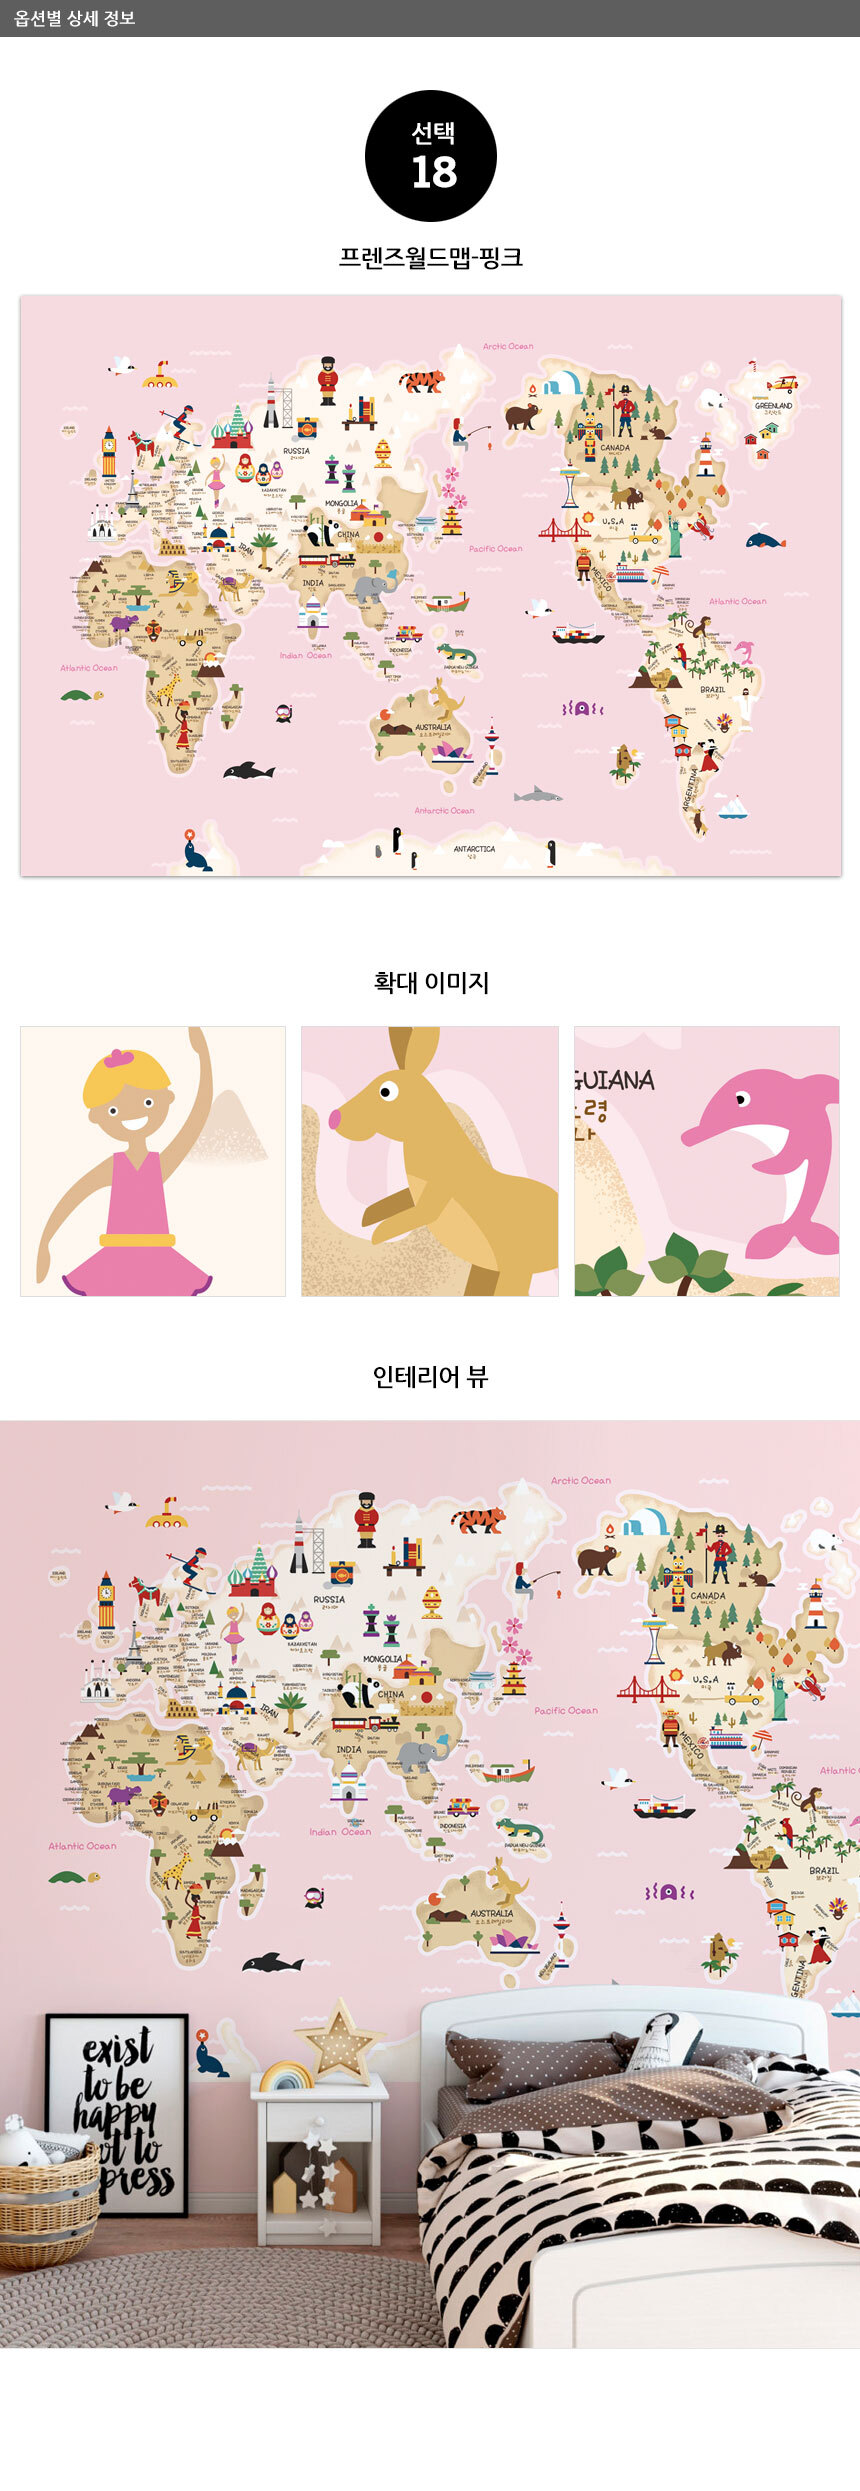 01 마이월드맵-핑크 아이방 어린이 뮤럴벽지